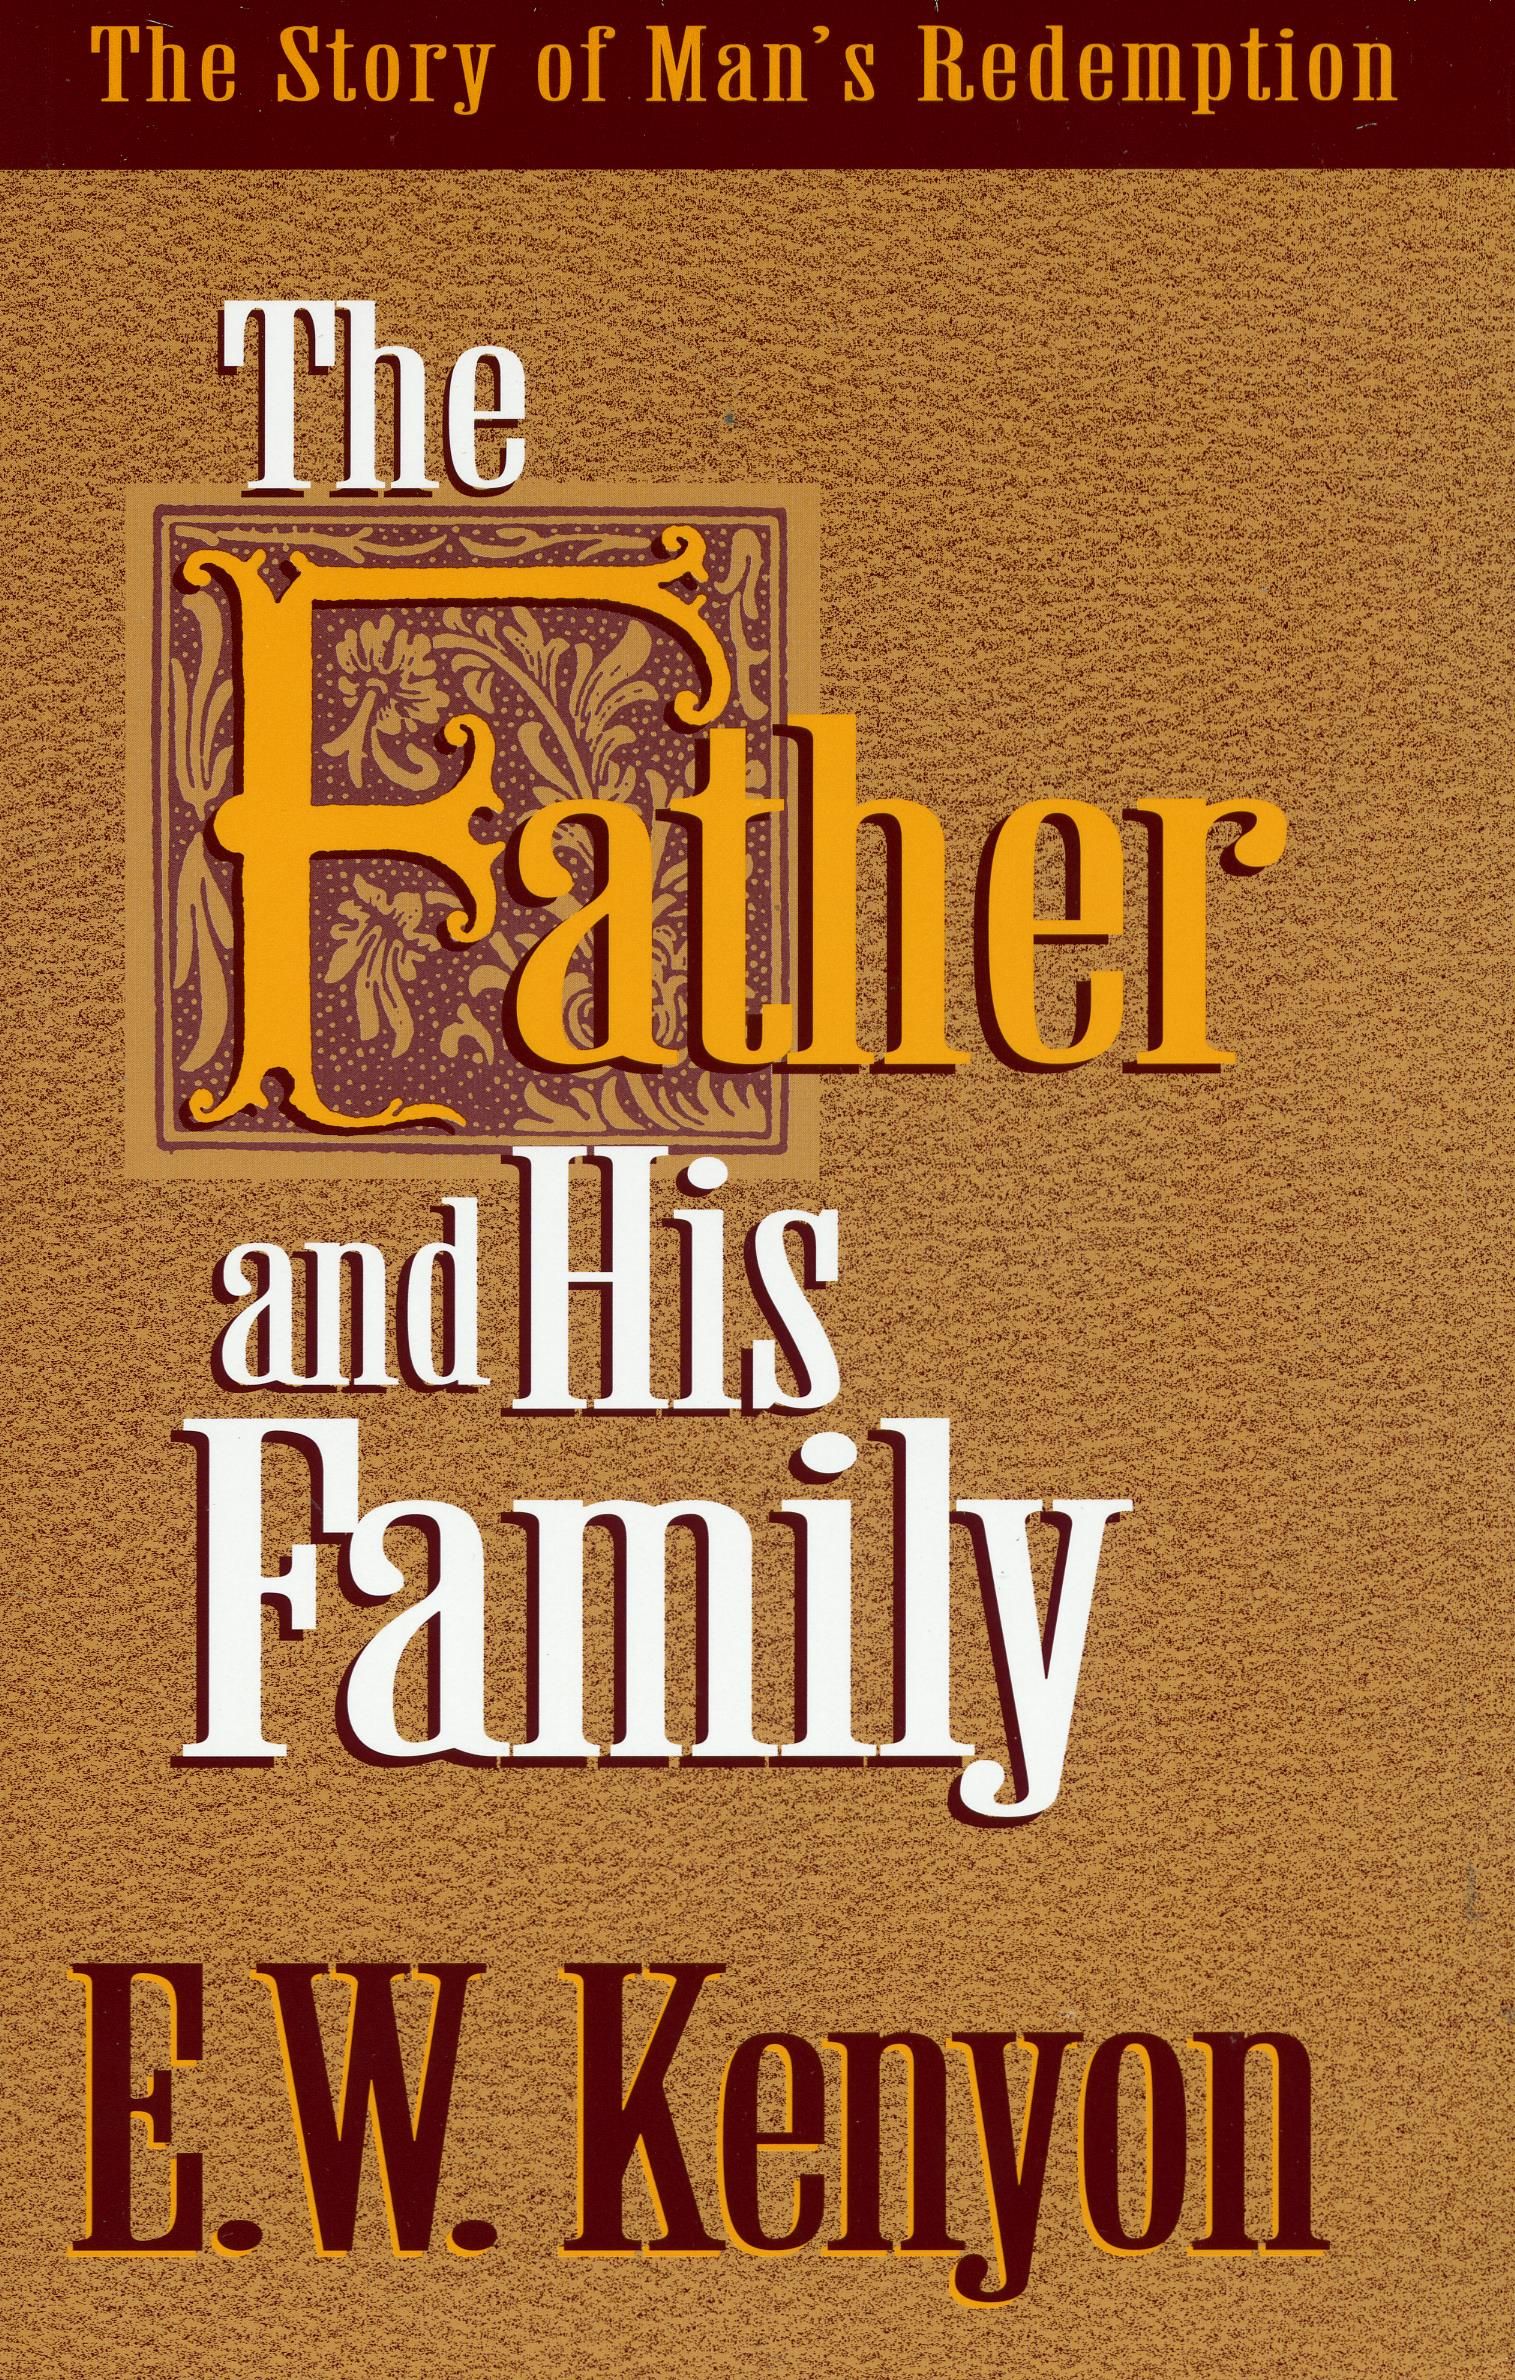 E.W. Kenyon: The Father & His Family